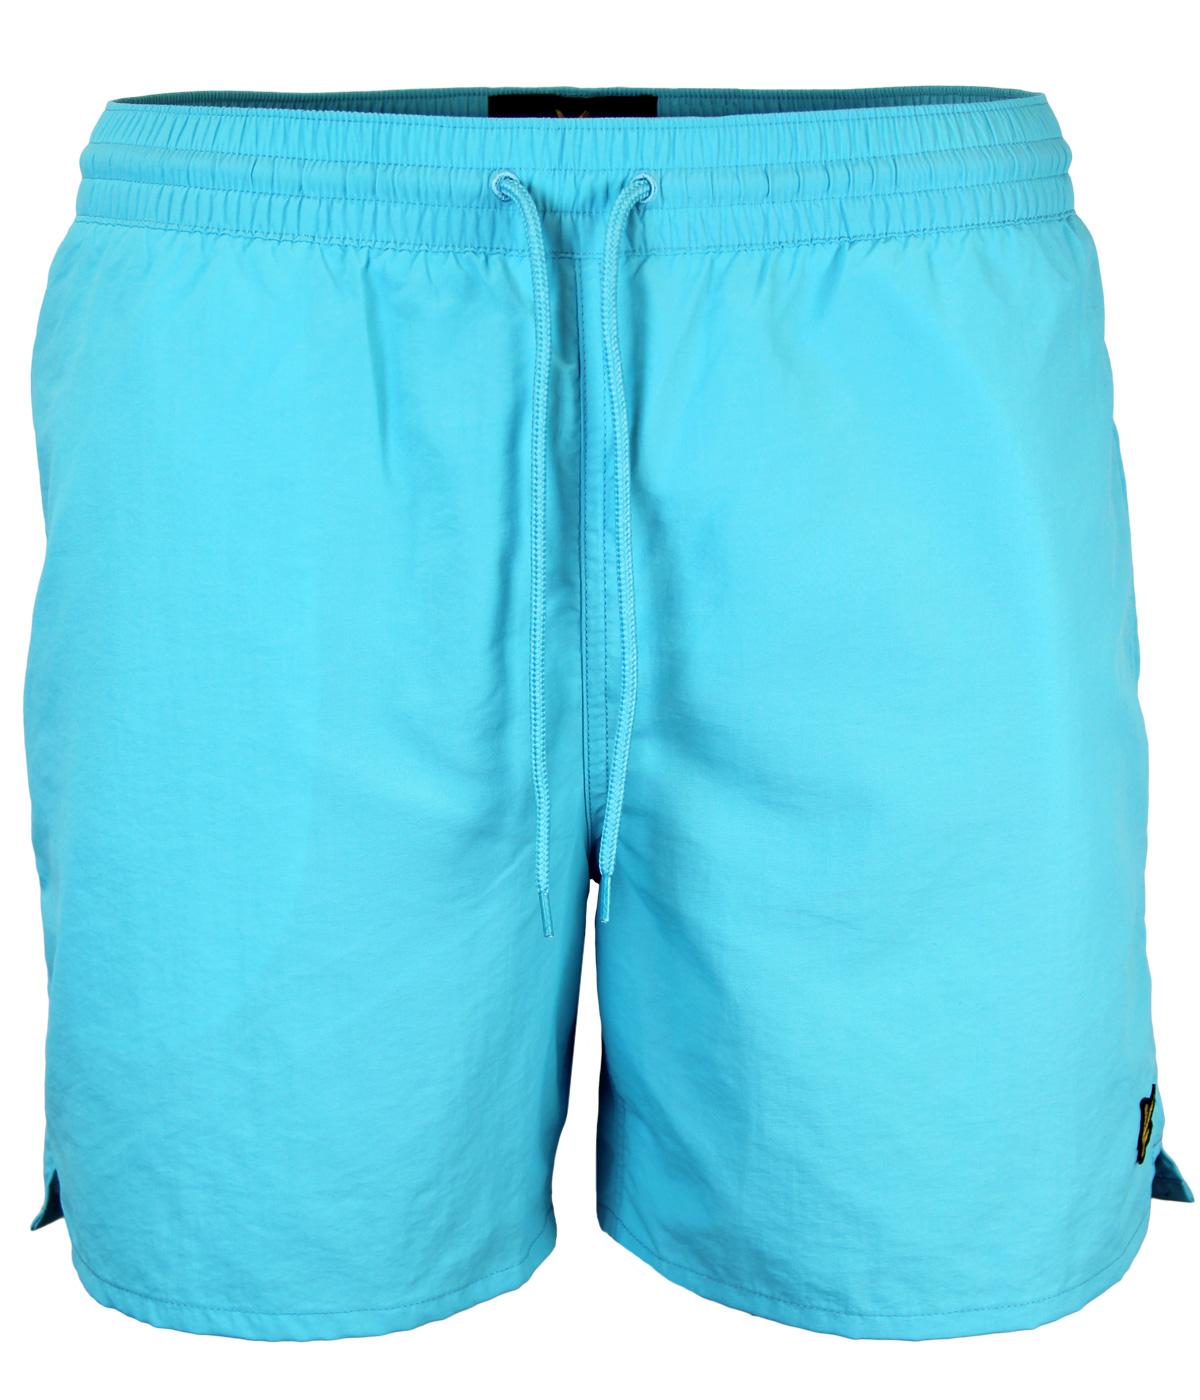 LYLE & SCOTT Retro Mod Plain Nylon Swim Shorts in Caribbean Ocean